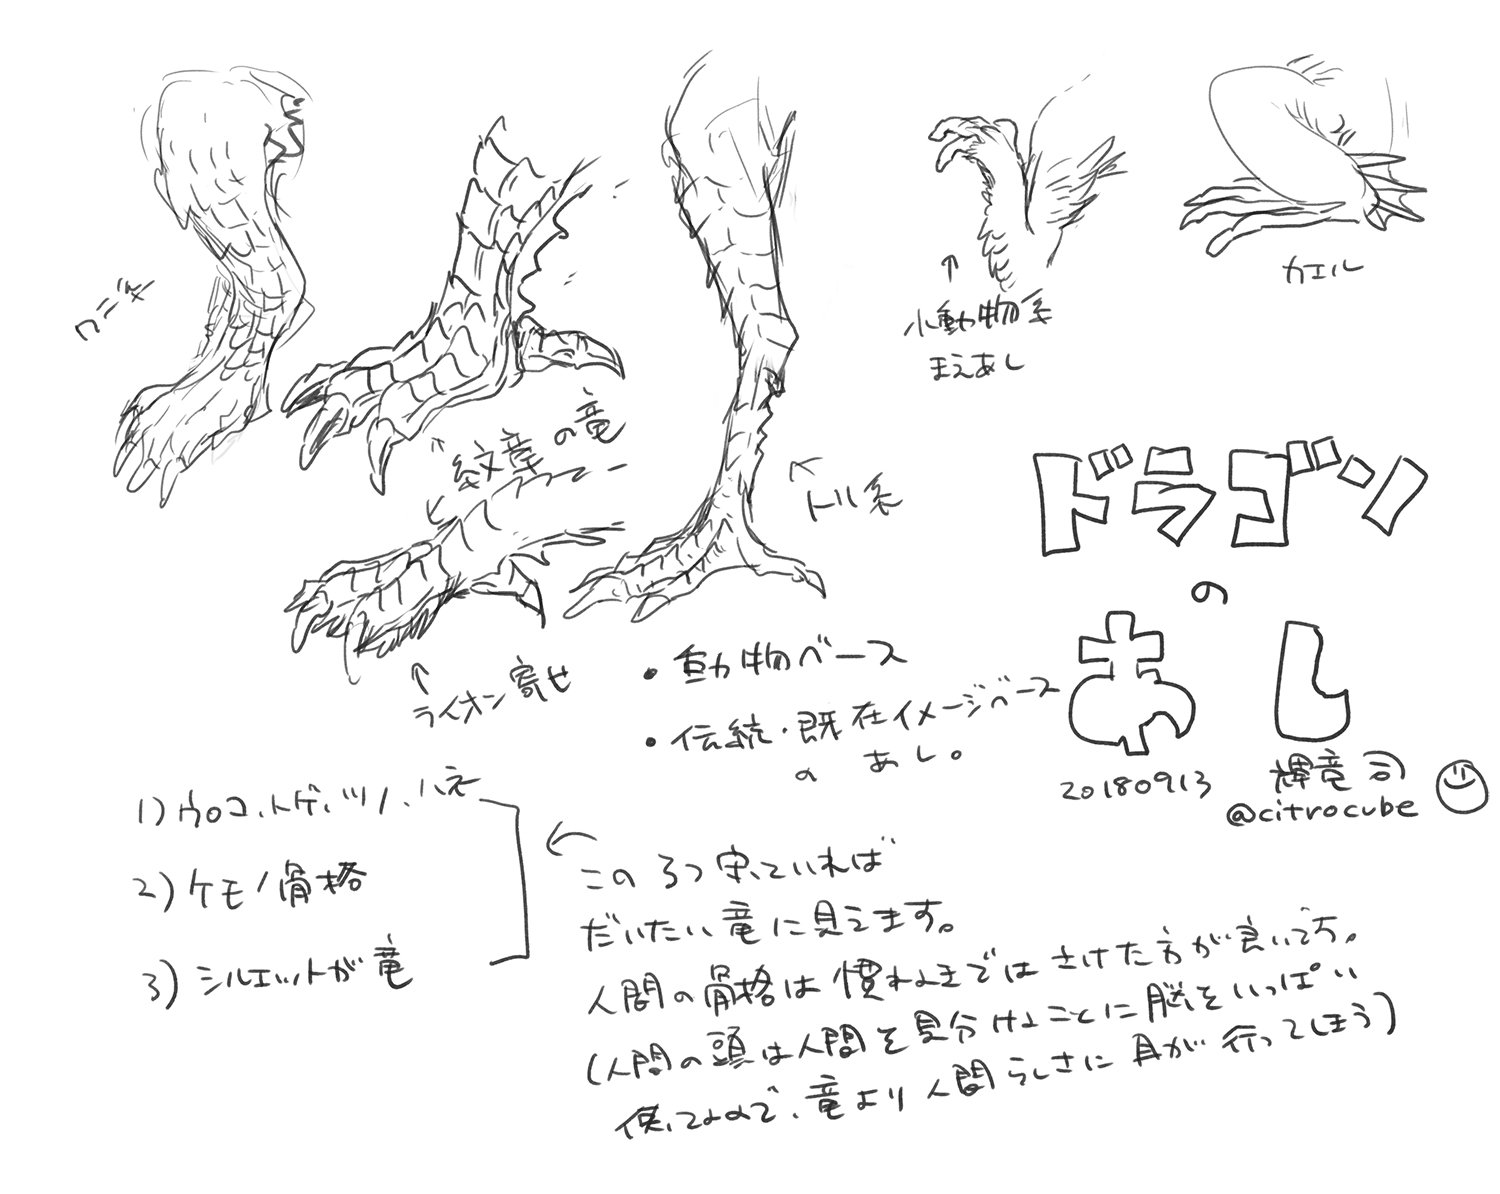 輝竜司 Tsukasa Kiryu ドラゴンのデザインの仕方 足やウロコの描き方 をちょっとまとめてみました デザインの仕方は 竜であることを定義する最低限の要素だけ抜き出しました 本当はもっと沢山パラメータがあって ゲームのキャラデザインのスライダの